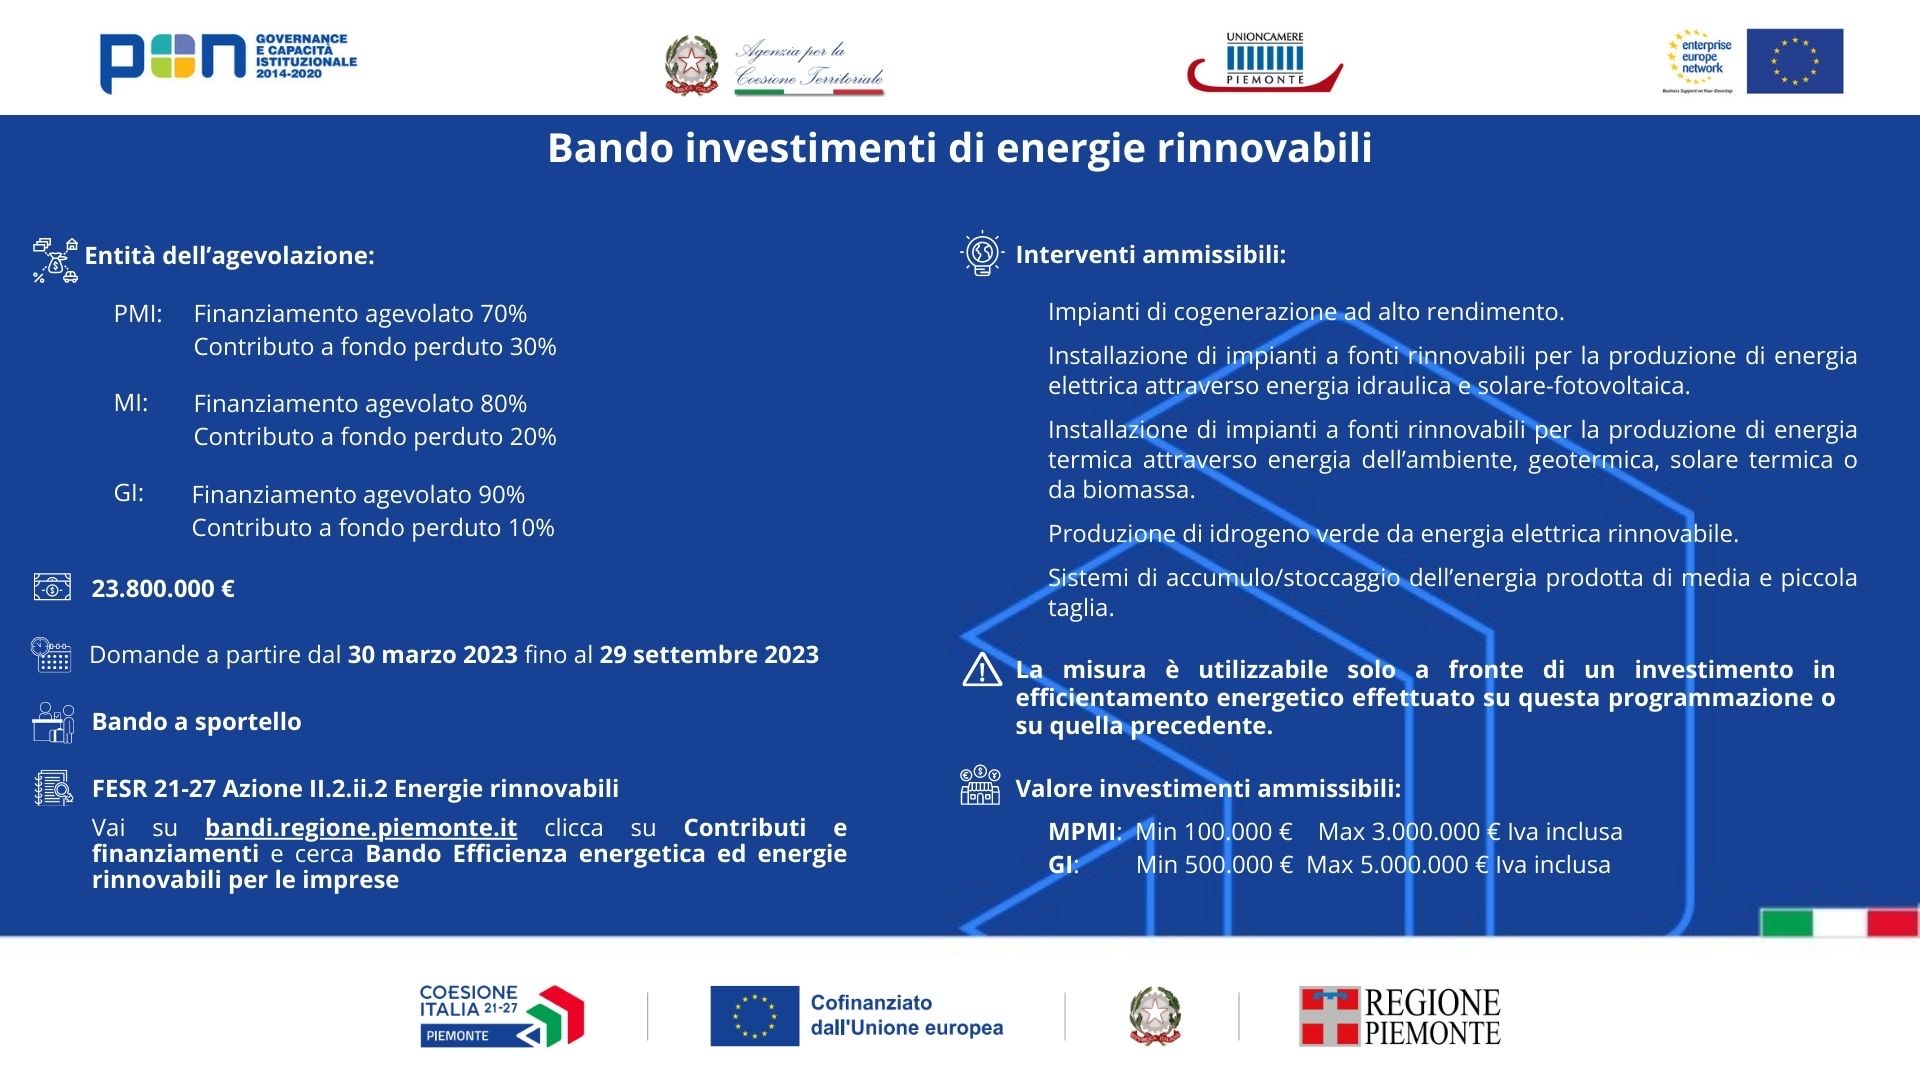 Bando investimenti di energie rinnovabili_Infografica